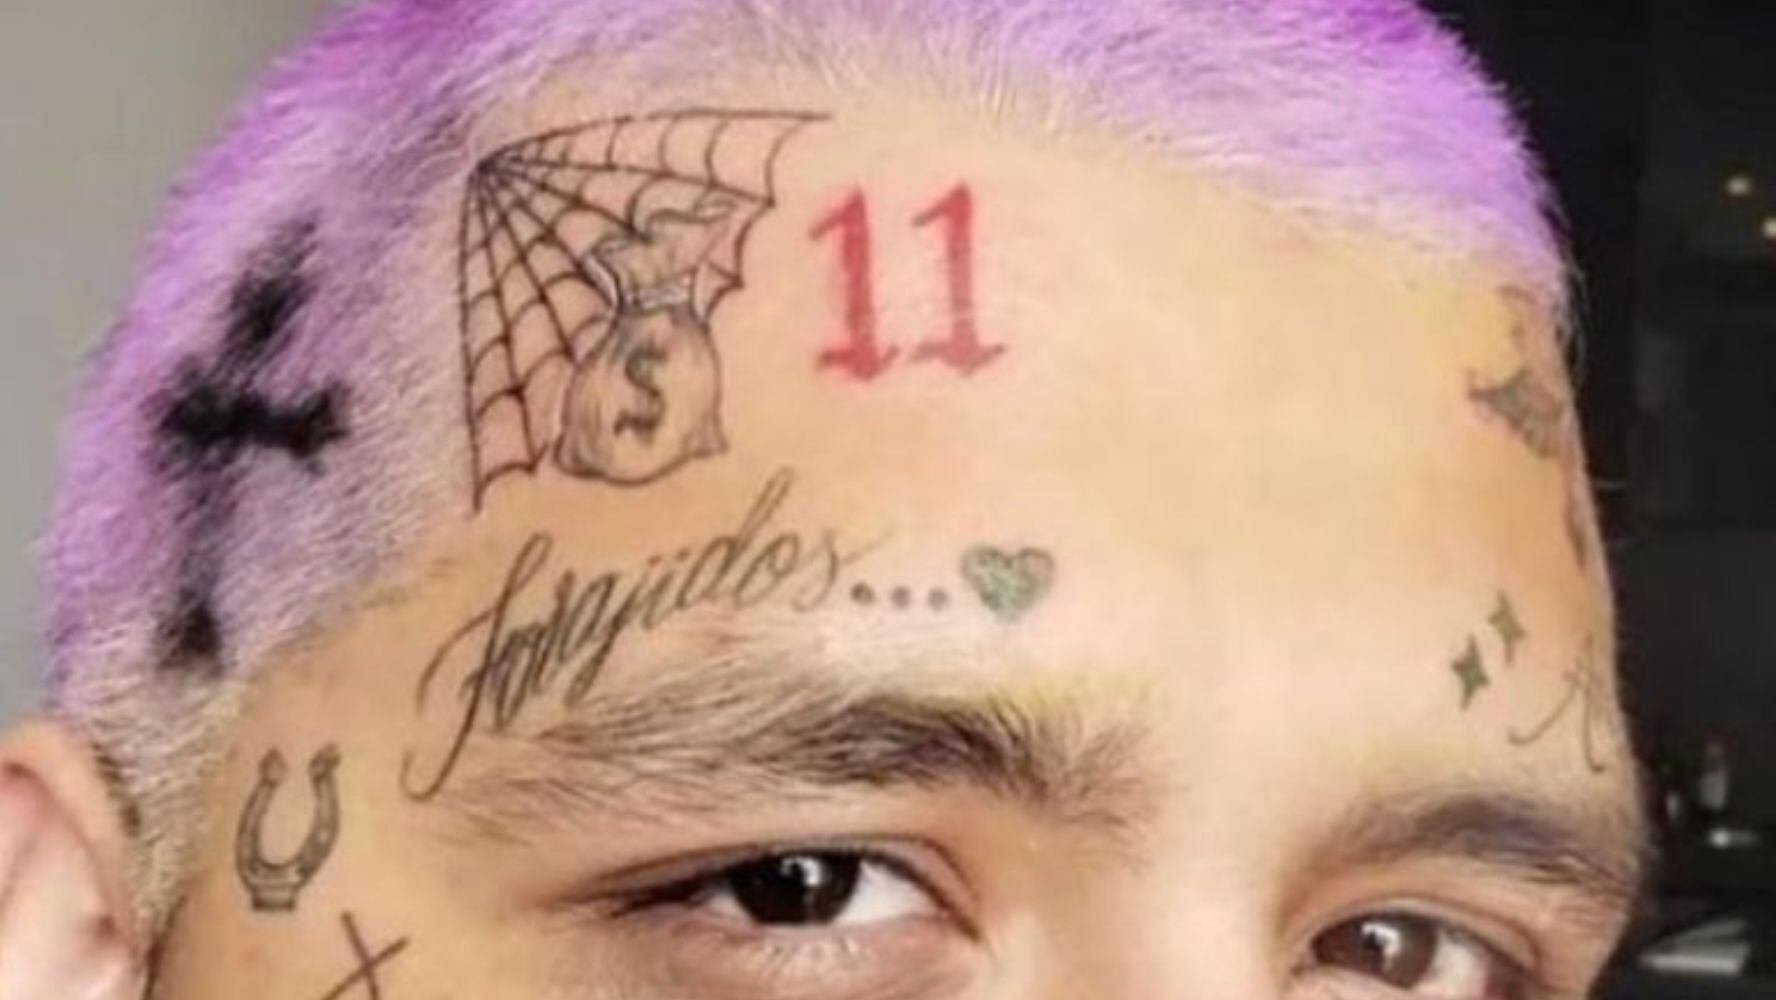 Christian Nodal se ha quitado y agregado tatuajes en su rostro desde 2020. (Foto: Instagram)